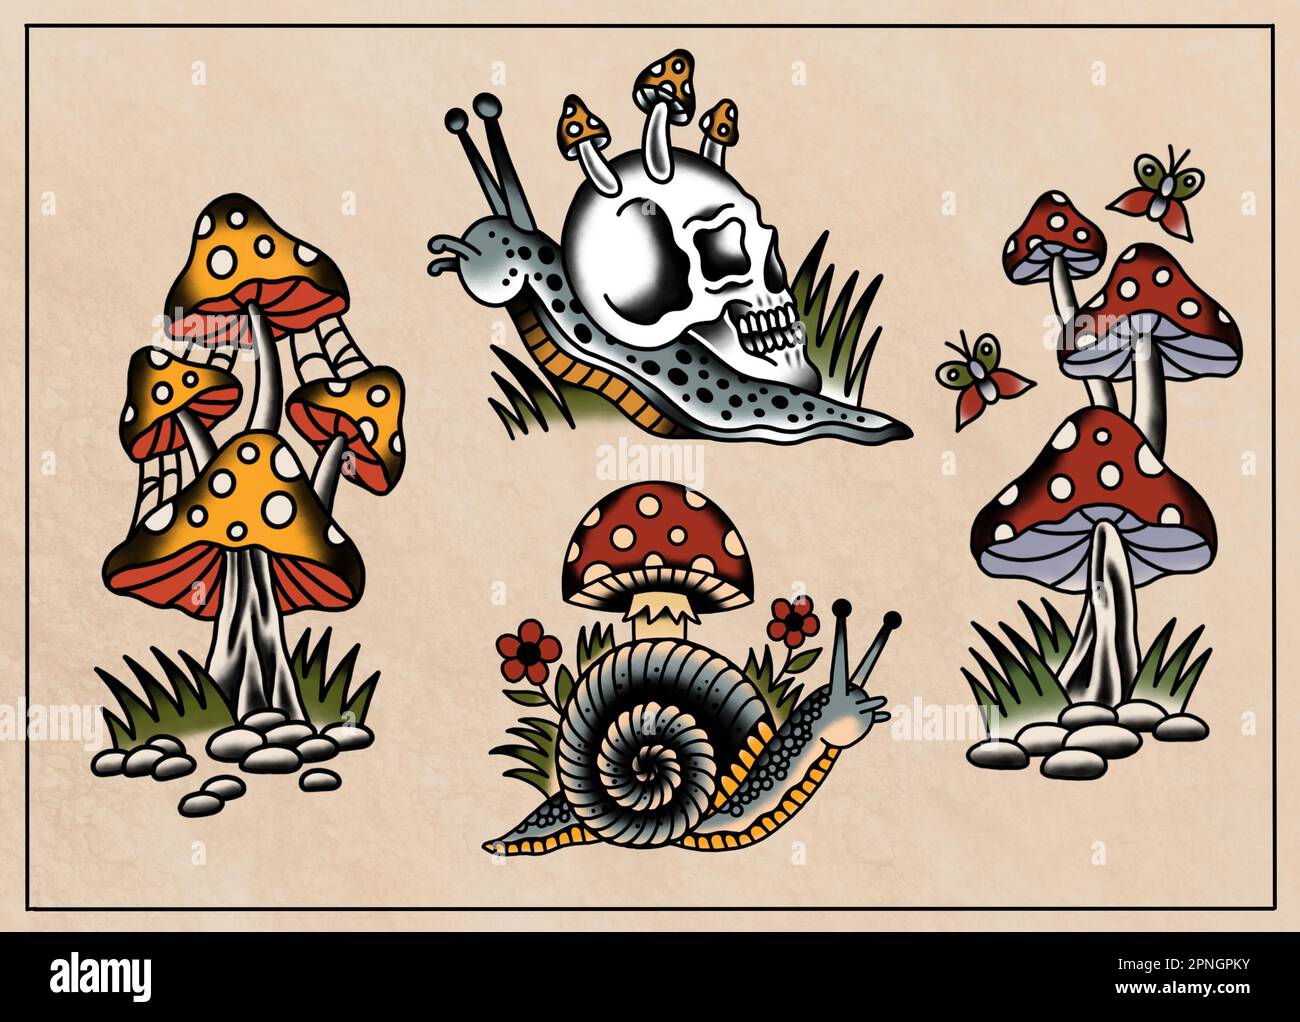 Old School, traditionelle Tattoo Art-Zeichensammlung voll gefärbt auf altem Papierhintergrund, 4 verschiedene Designs, Pilze, Schnecken, Insekten Stockfoto